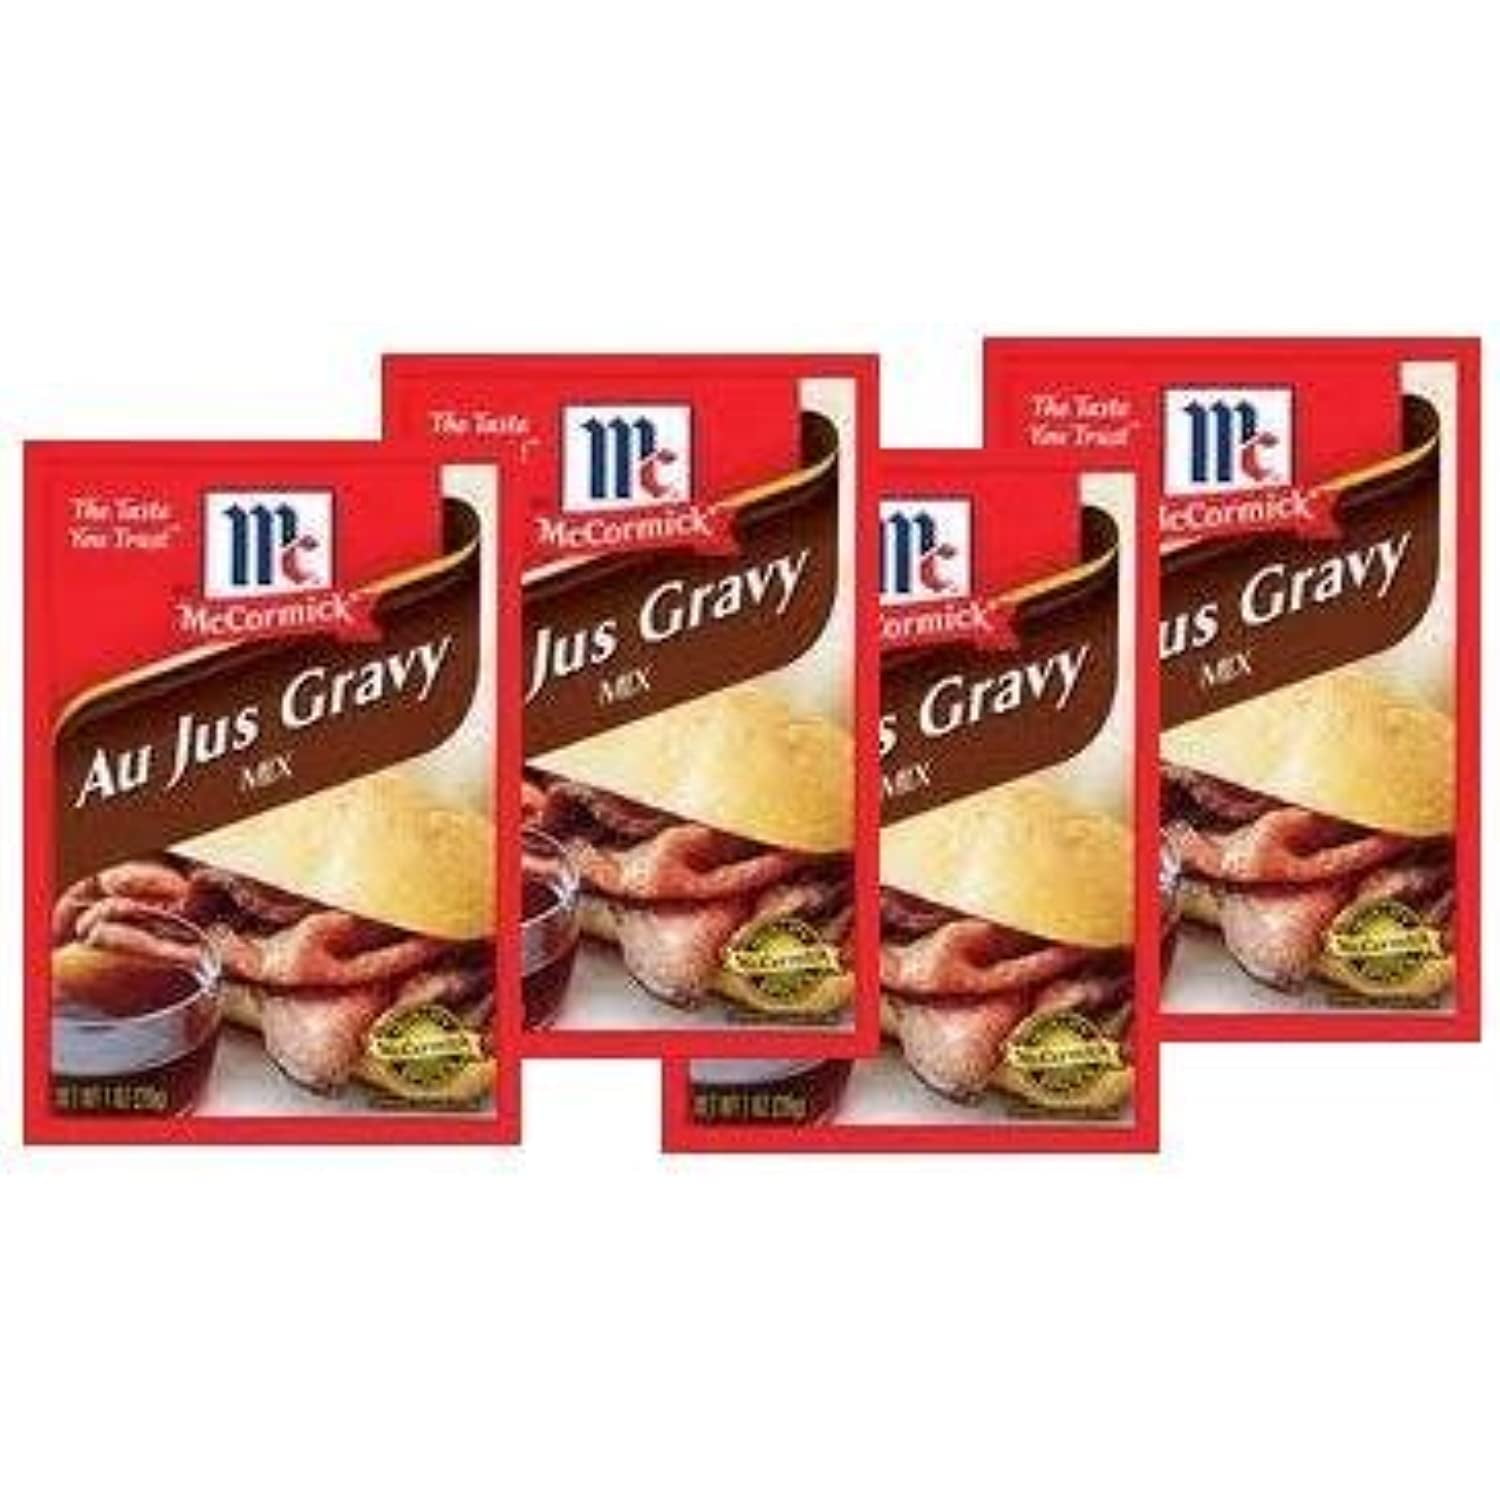 SE Grocers - SE Grocers Au Jus Gravy Mix 1 Oz (1 ounce)